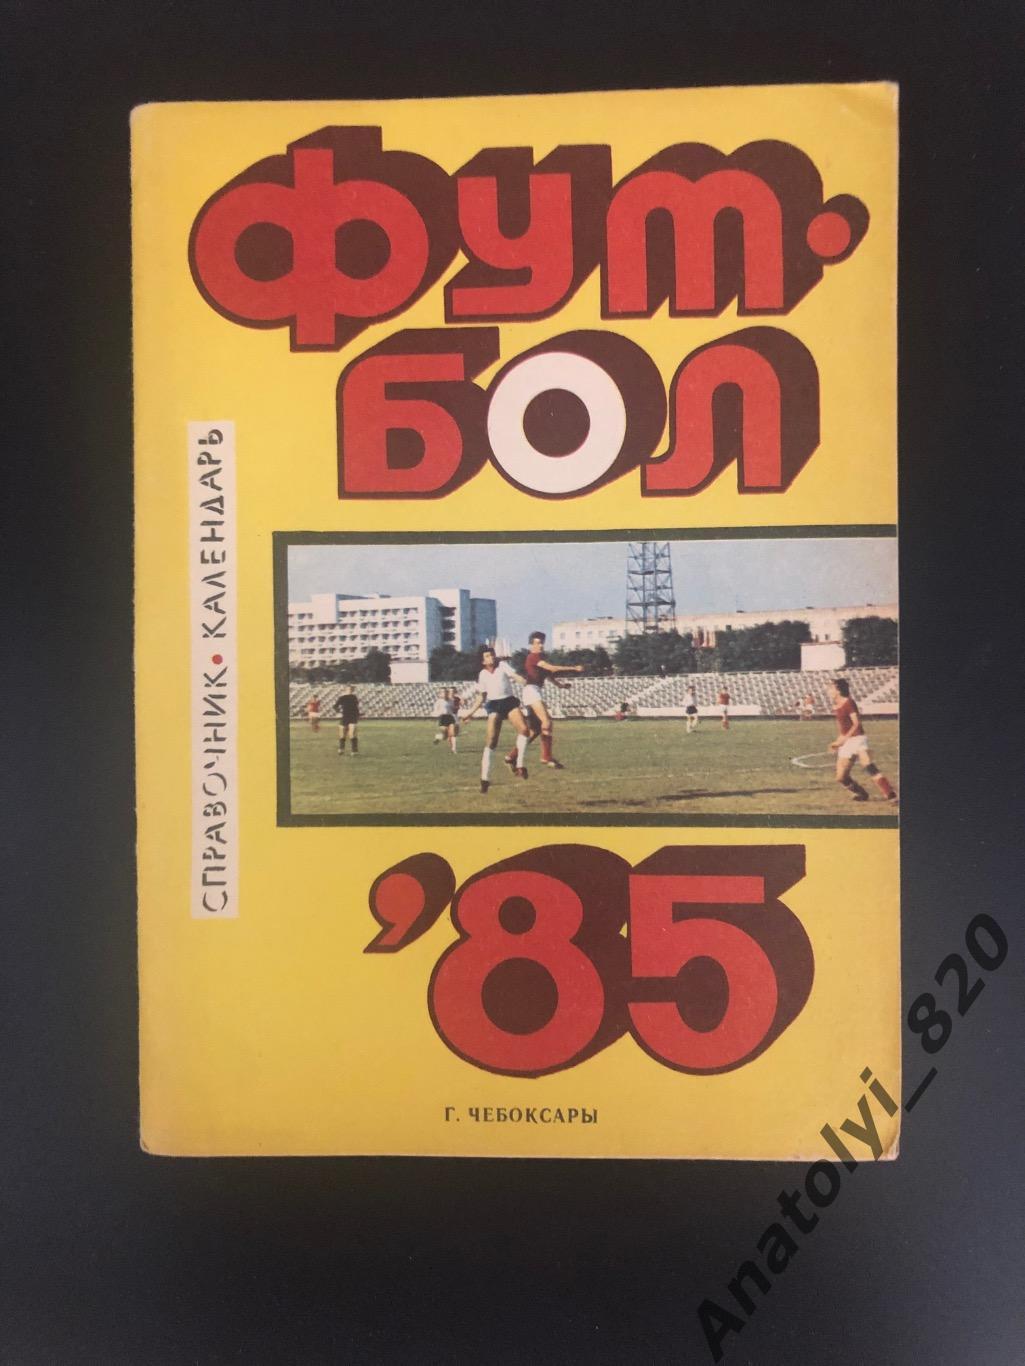 Чебоксары 1985 год календарь - справочник